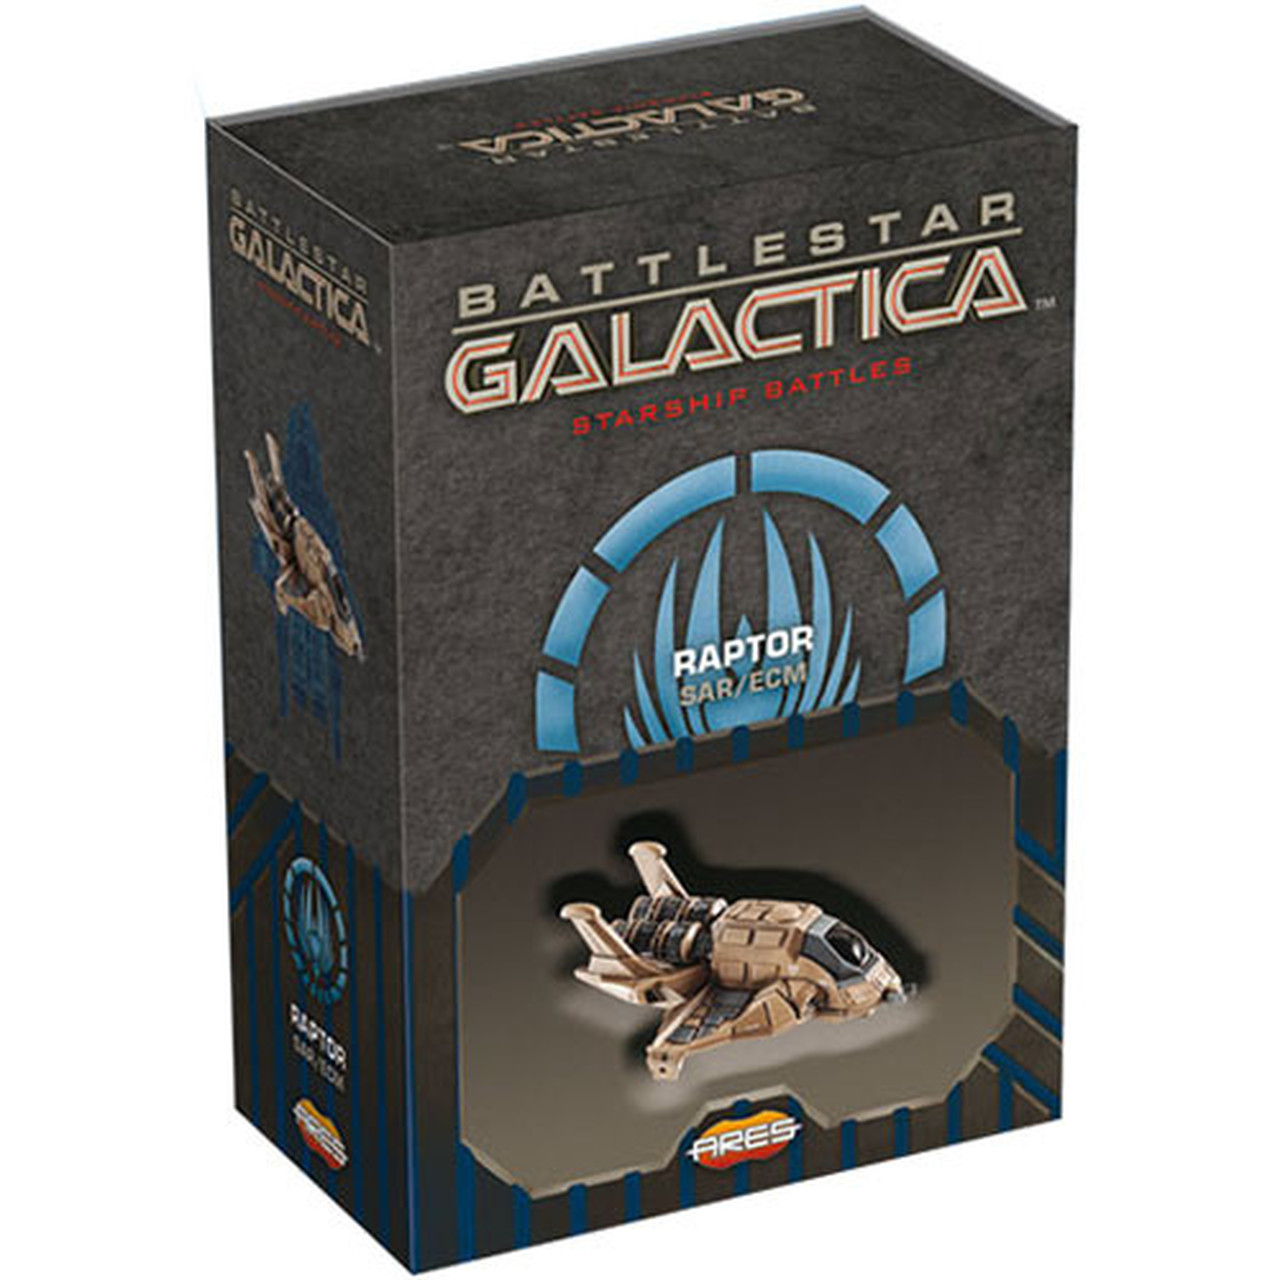 Battlestar Galactica - Starship Battles Uitbreiding: Raptor (SAR / ECM) (Bordspellen), Ares Games